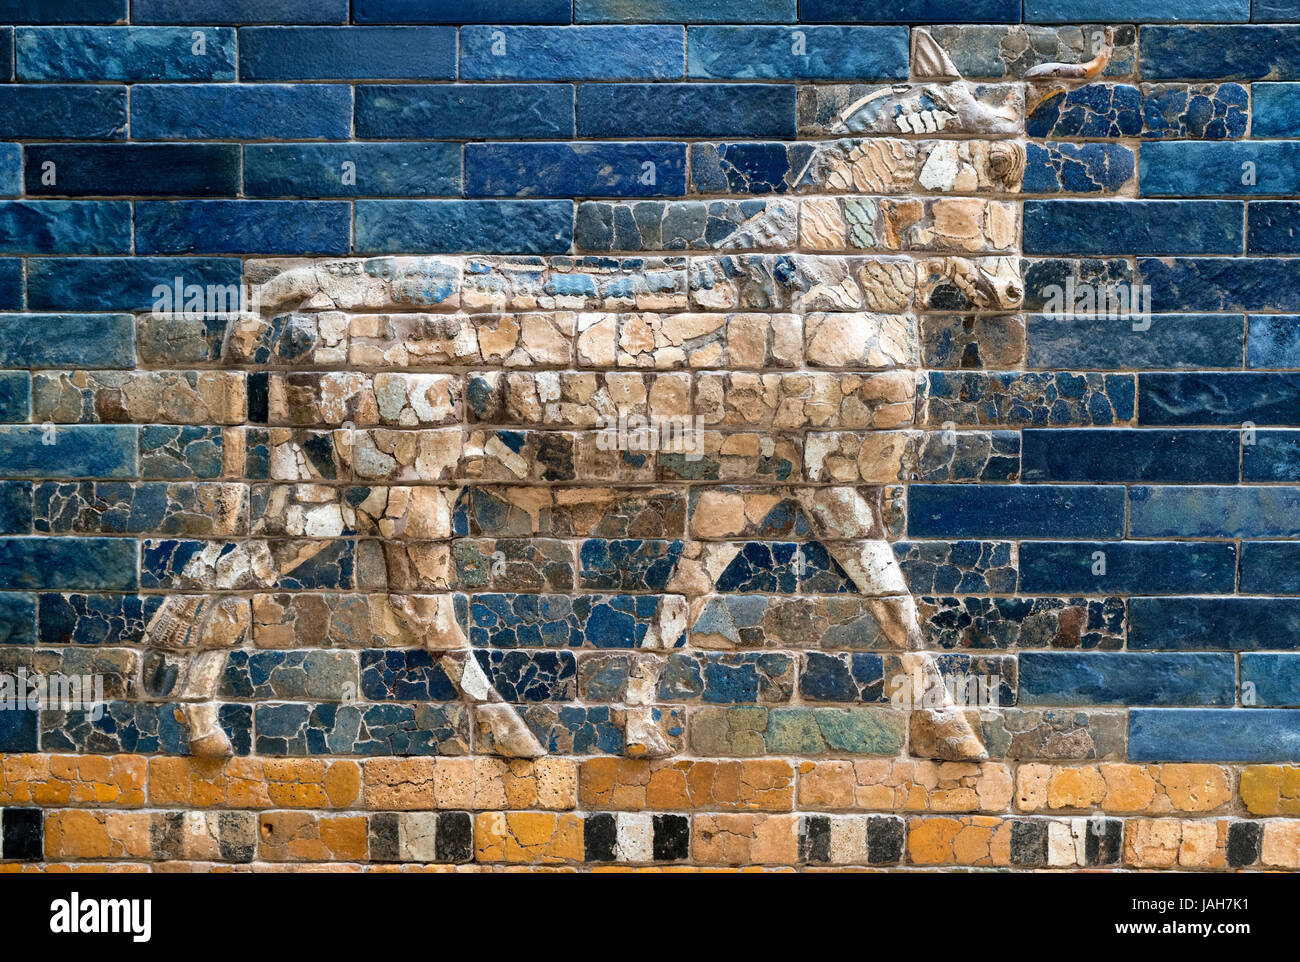 Bull-Mosaik aus farbig glasierten Ziegeln auf das babylonische Ischtar-Tor, c.604-562 v. Chr., Pergamon Museum, Berlin, Deutschland Stockfoto